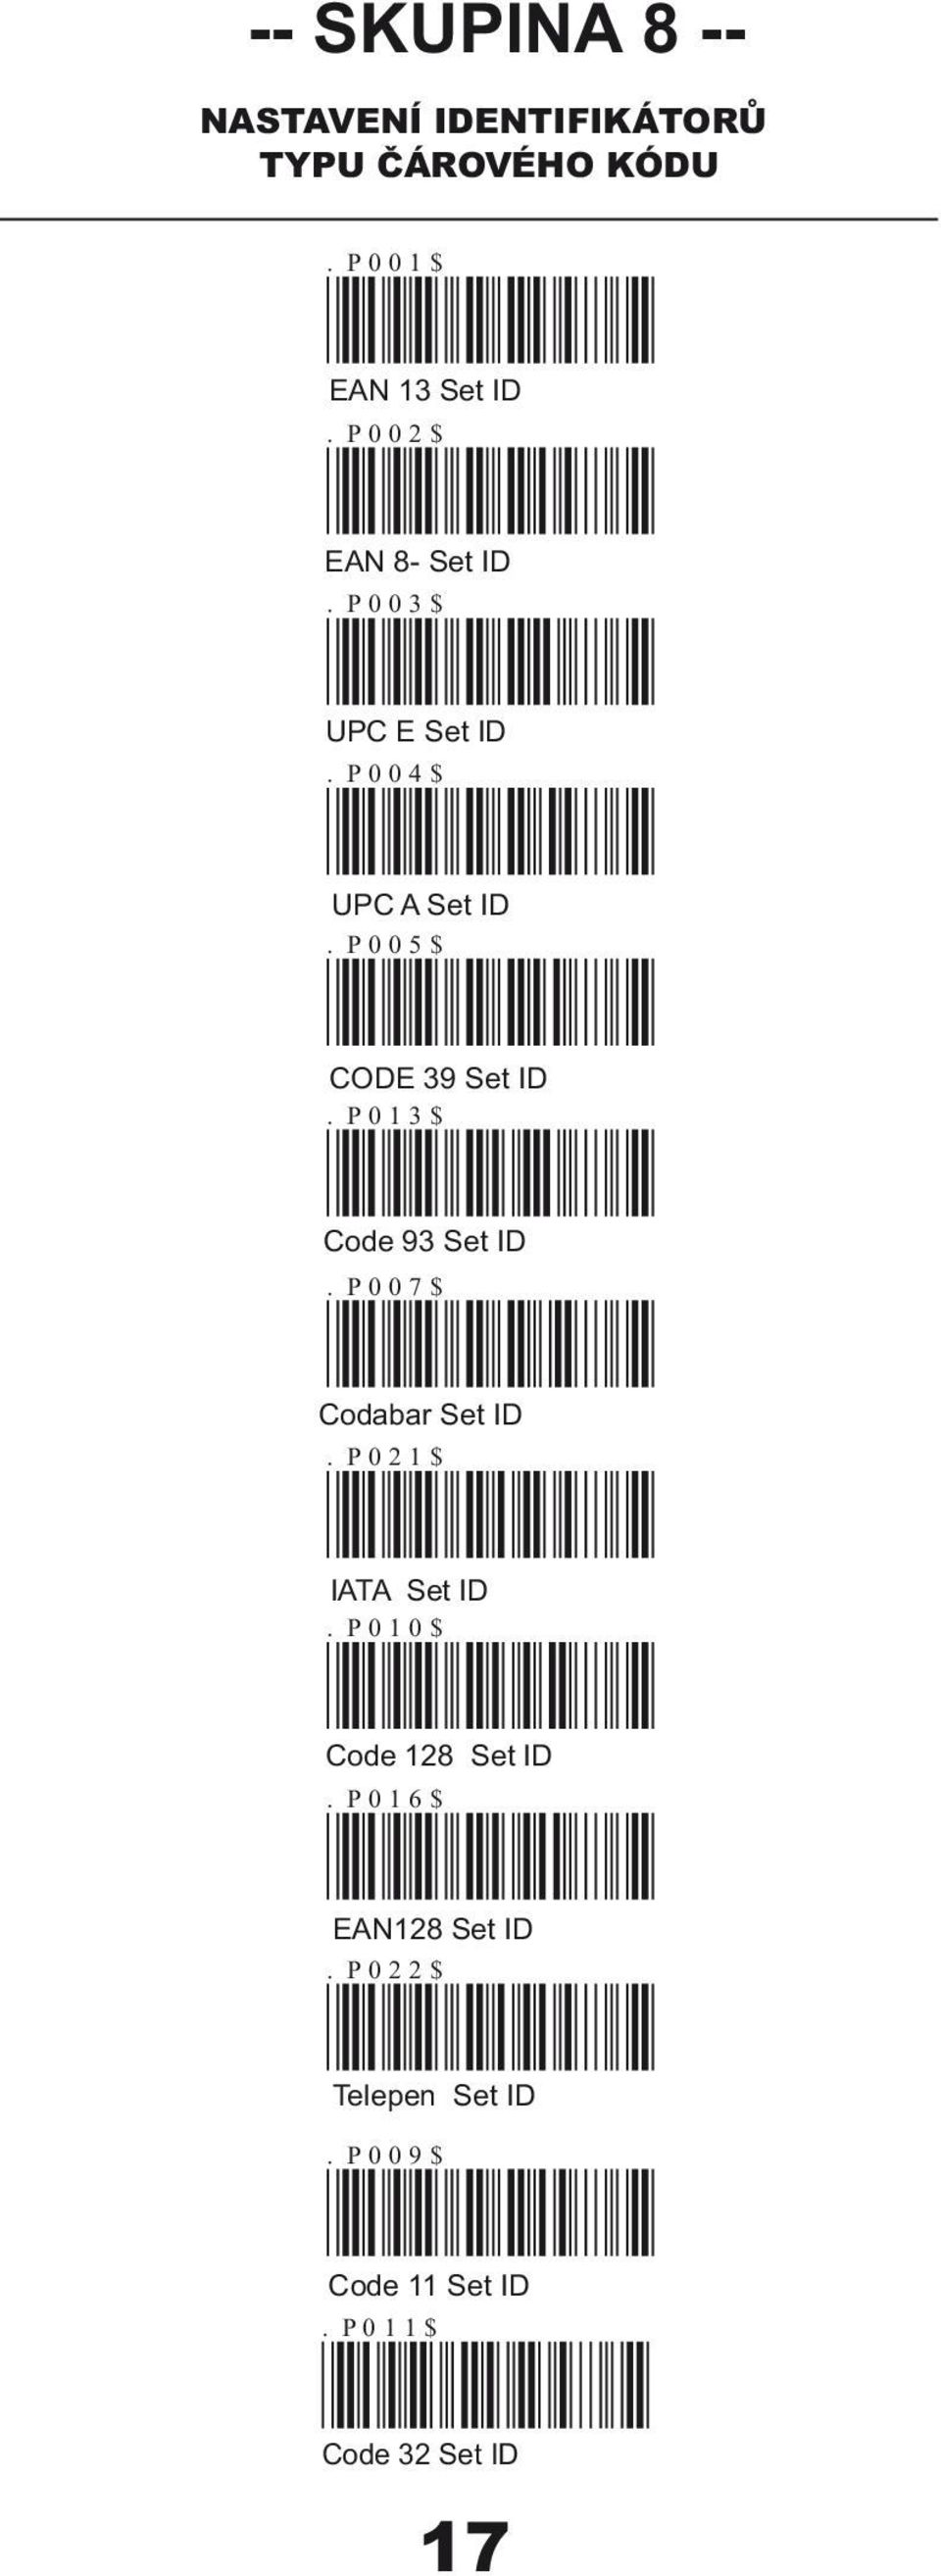 P013$ Code 93 Set ID. P007$ Codabar Set ID. P021$ IATA Set ID. P010$ Code 128 Set ID.